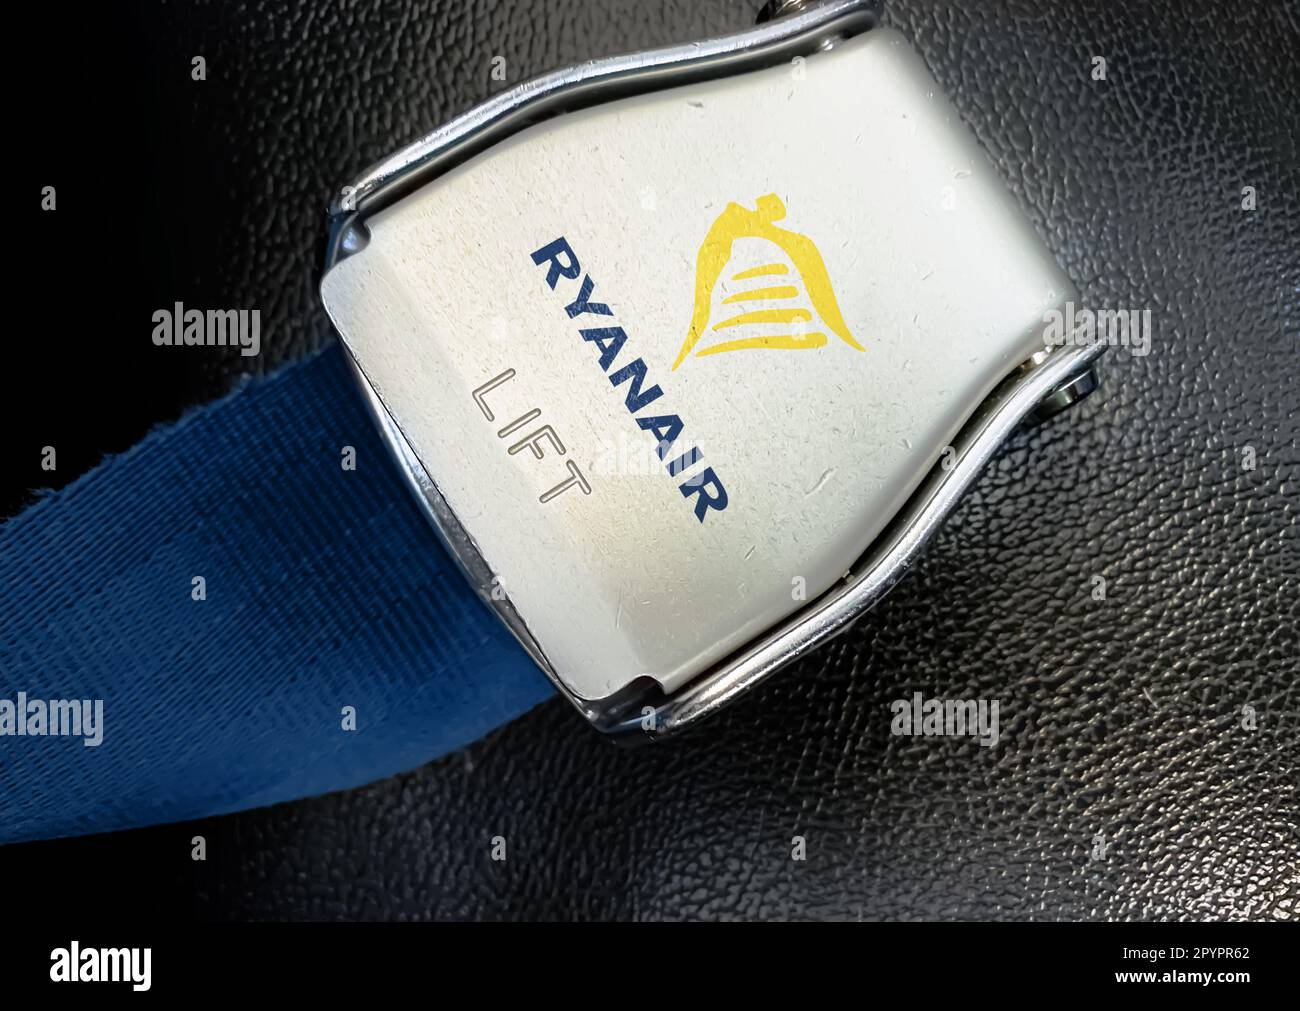 Dublin, IR Jan 2023 : détail de la boucle de la ceinture de sécurité avec logo Ryanair sur un siège vide. Ryanair est une compagnie aérienne irlandaise à bas prix. Modification d'illustration Banque D'Images